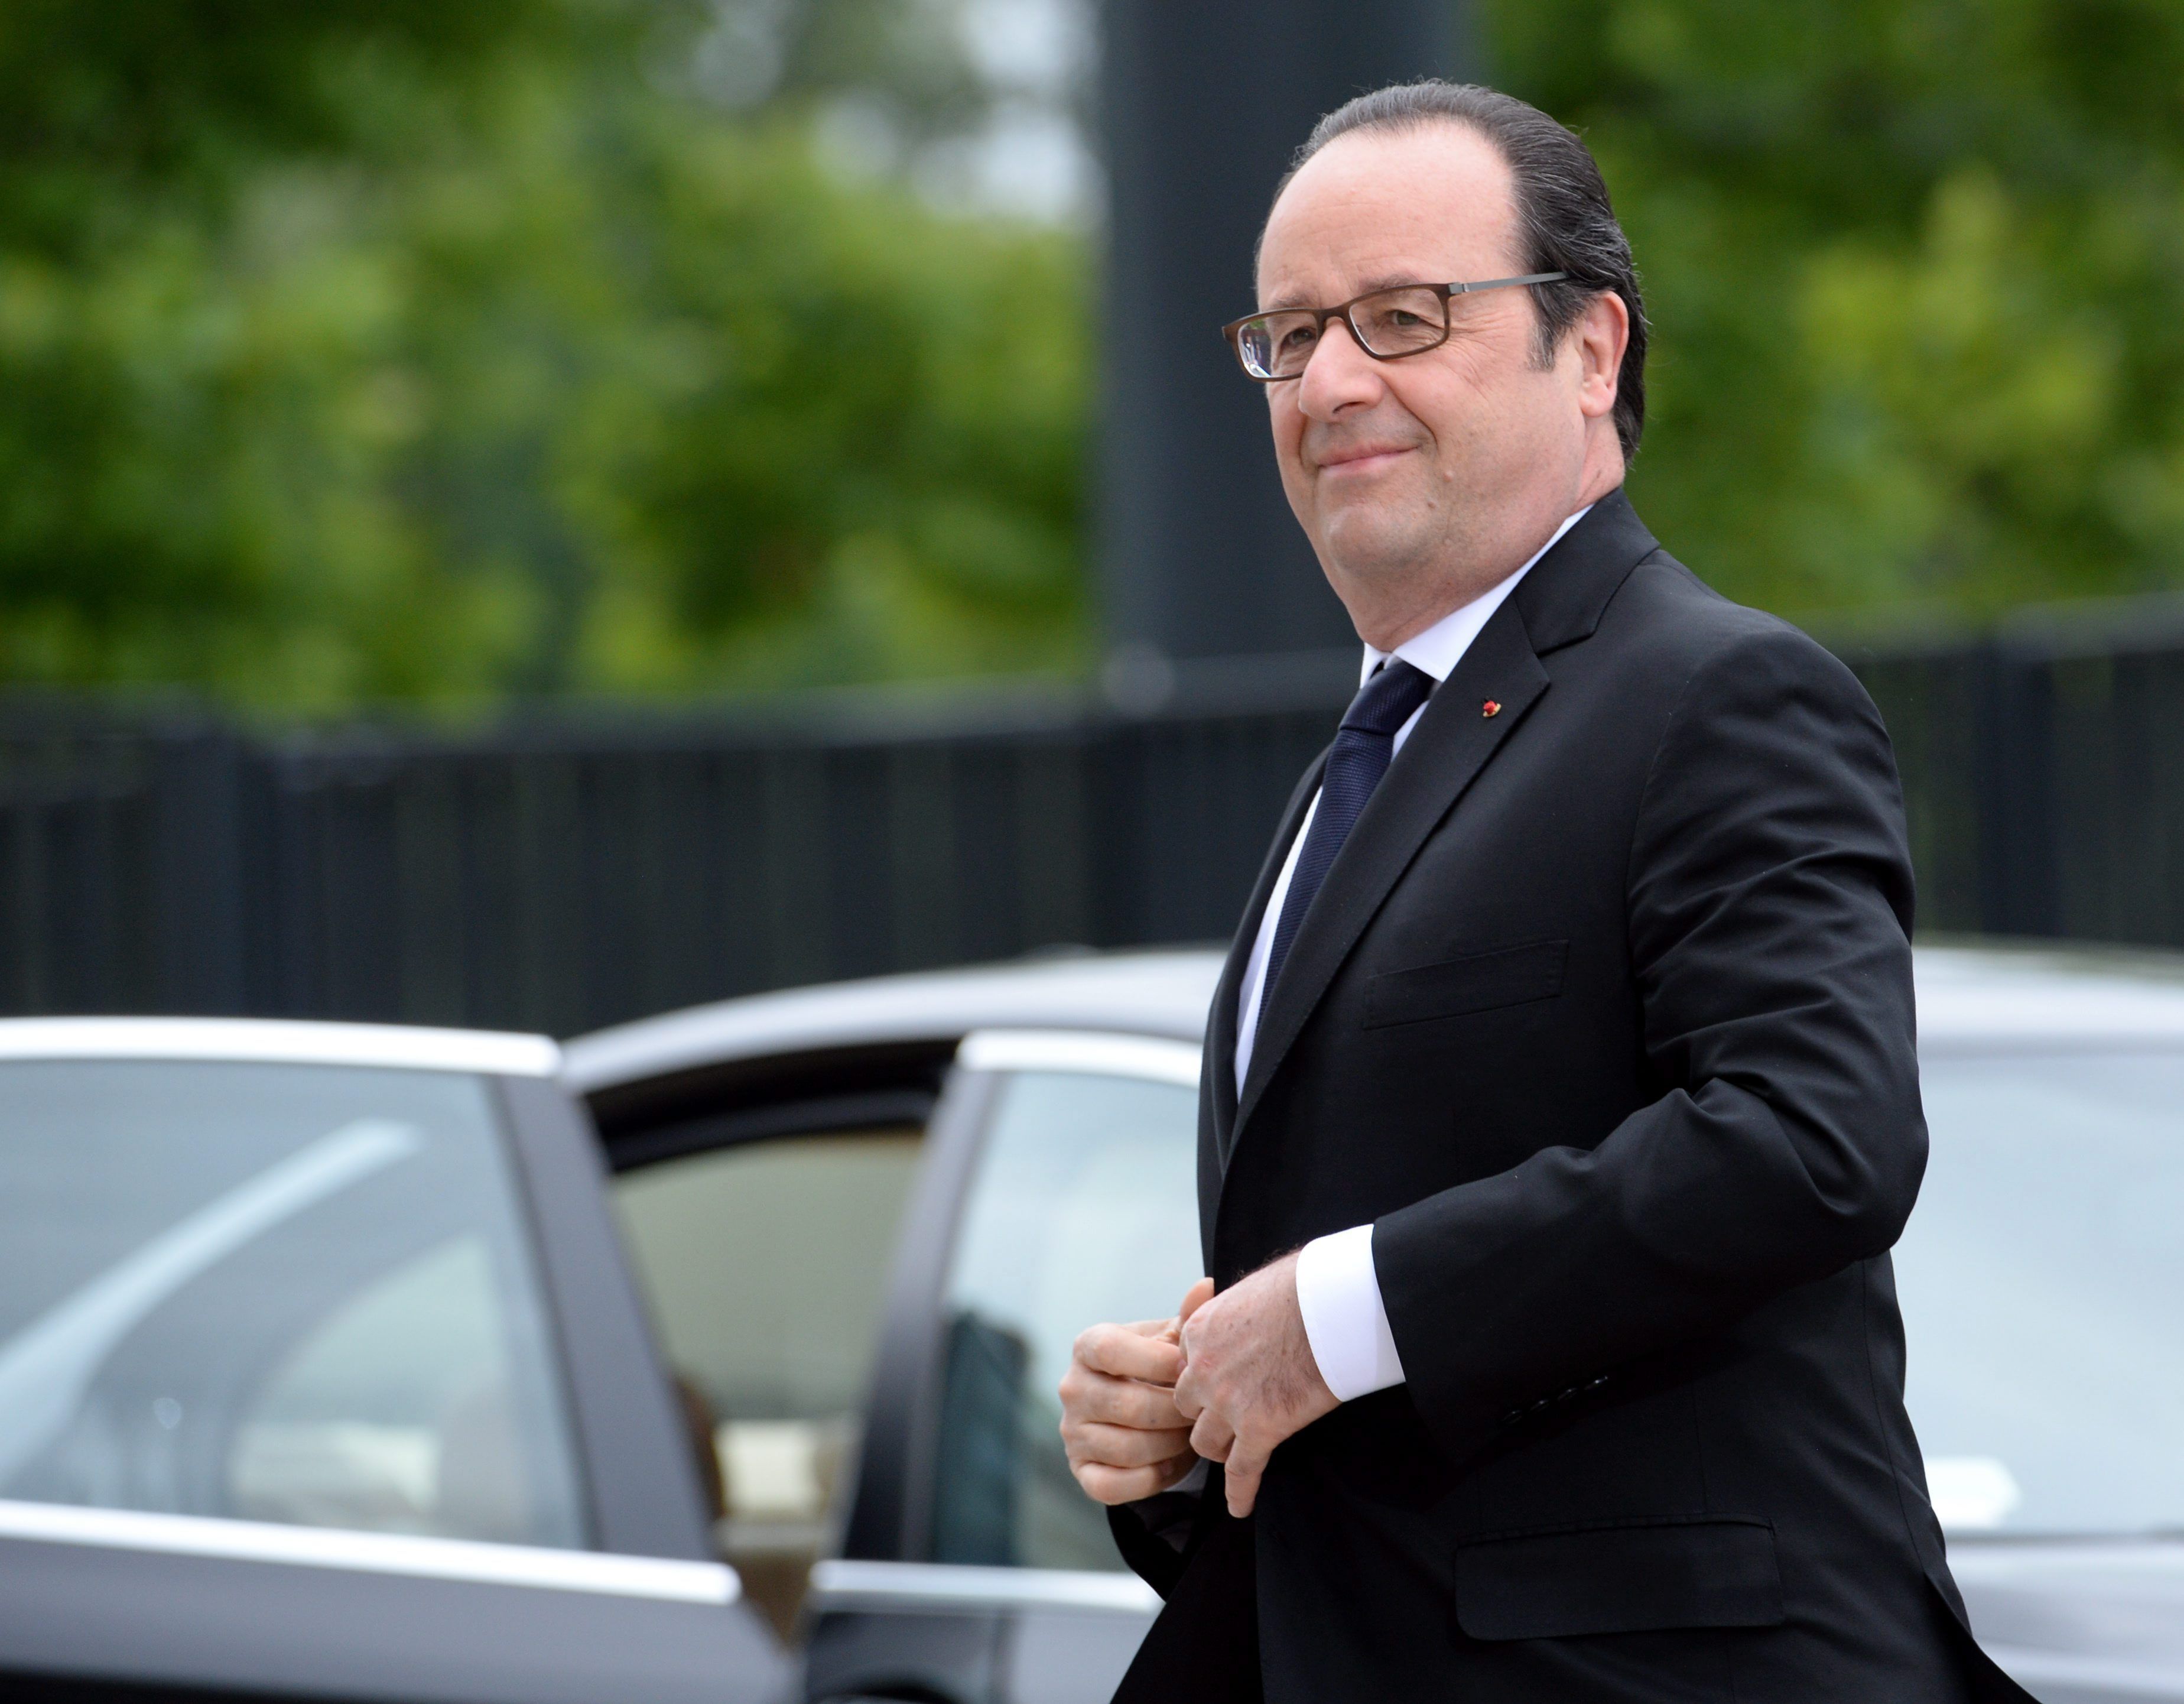 El perruquer d'Hollande guanya 9.895 euros al mes